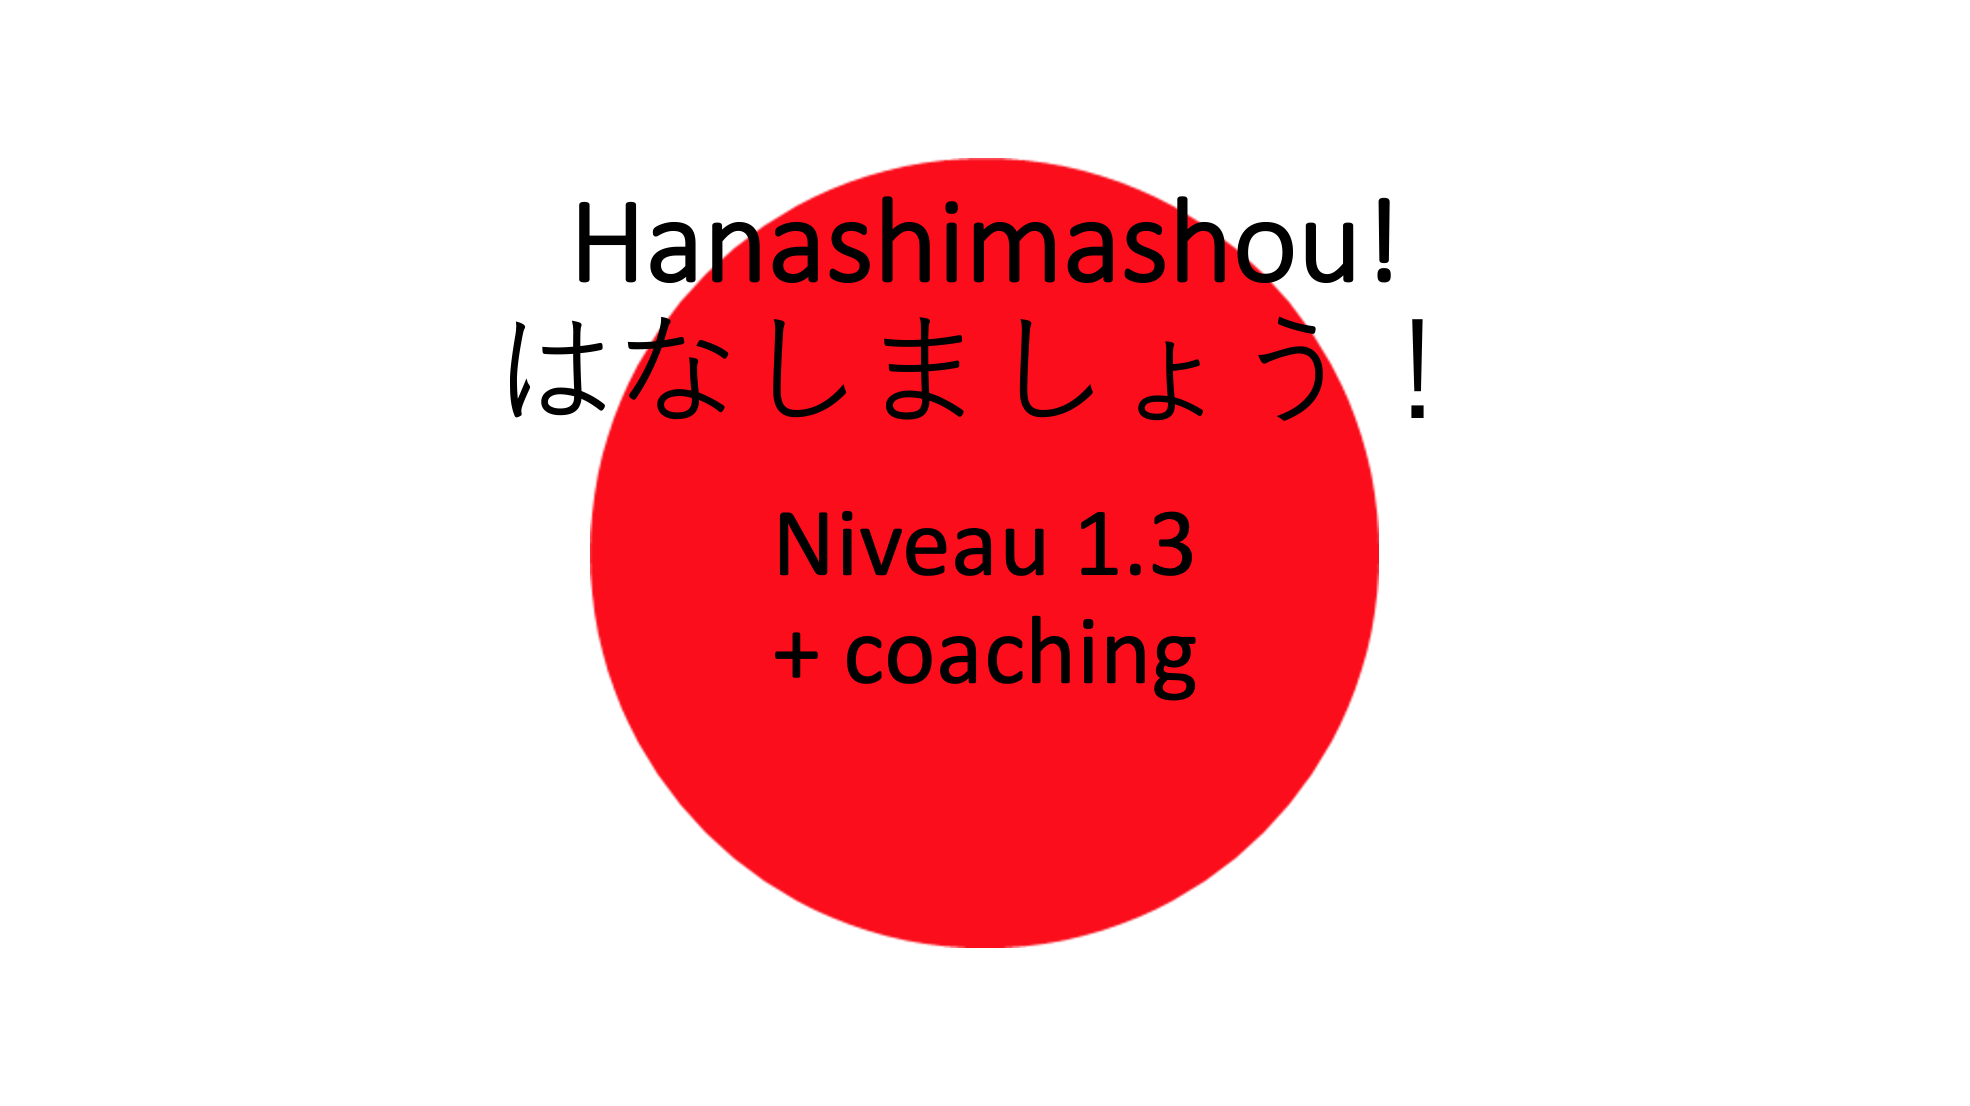 Hanashimashou 1.3 + coaching